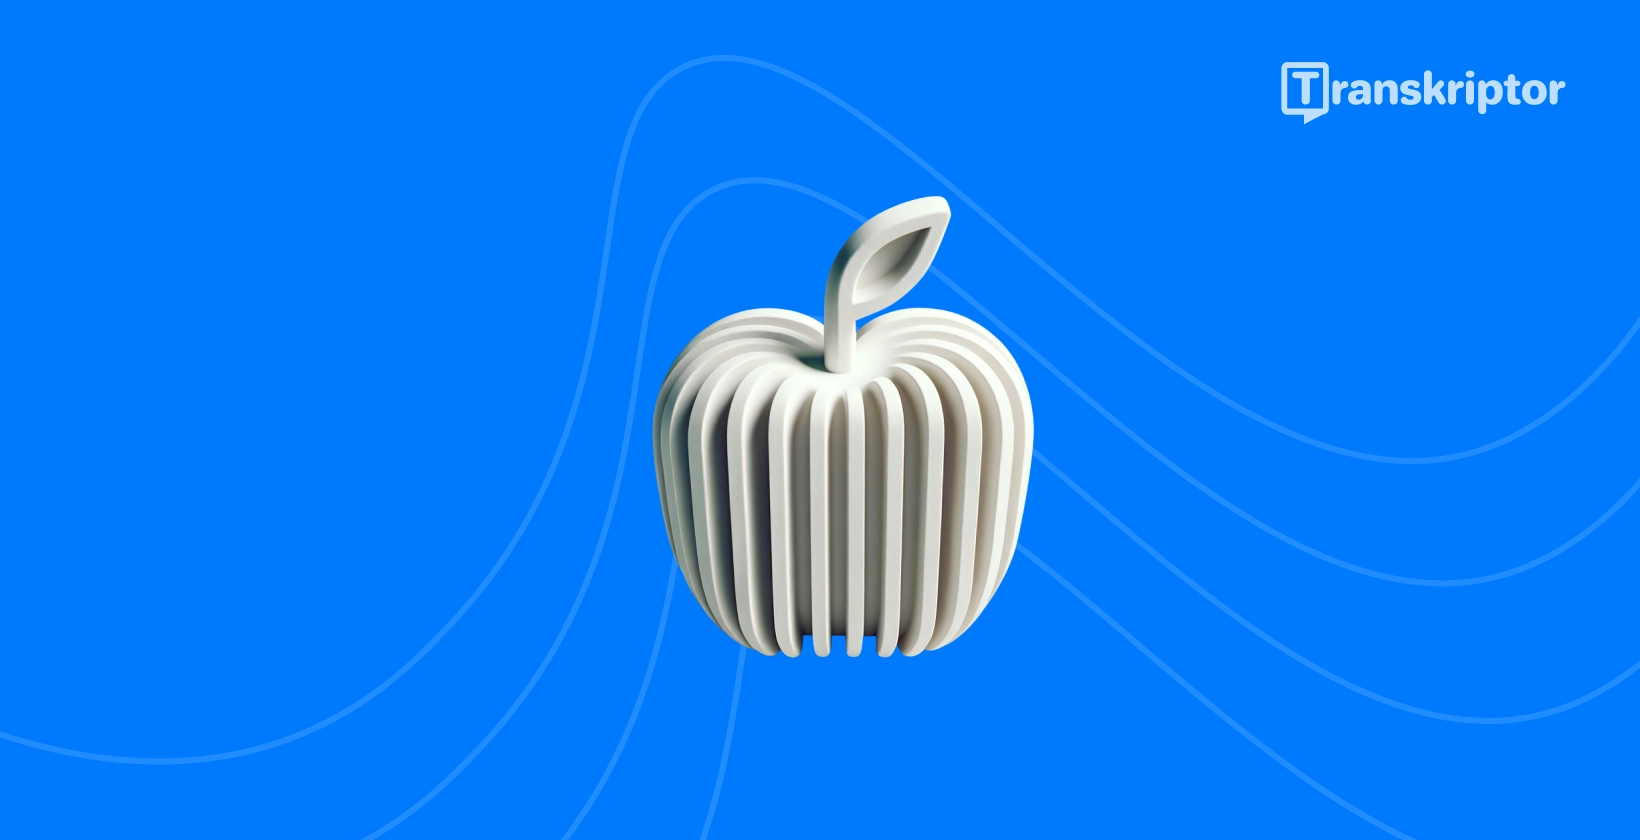 Стилизираното јаболко со звучни бранови ги претставува врвните апликации за транскрипција достапни за iPhone корисници.